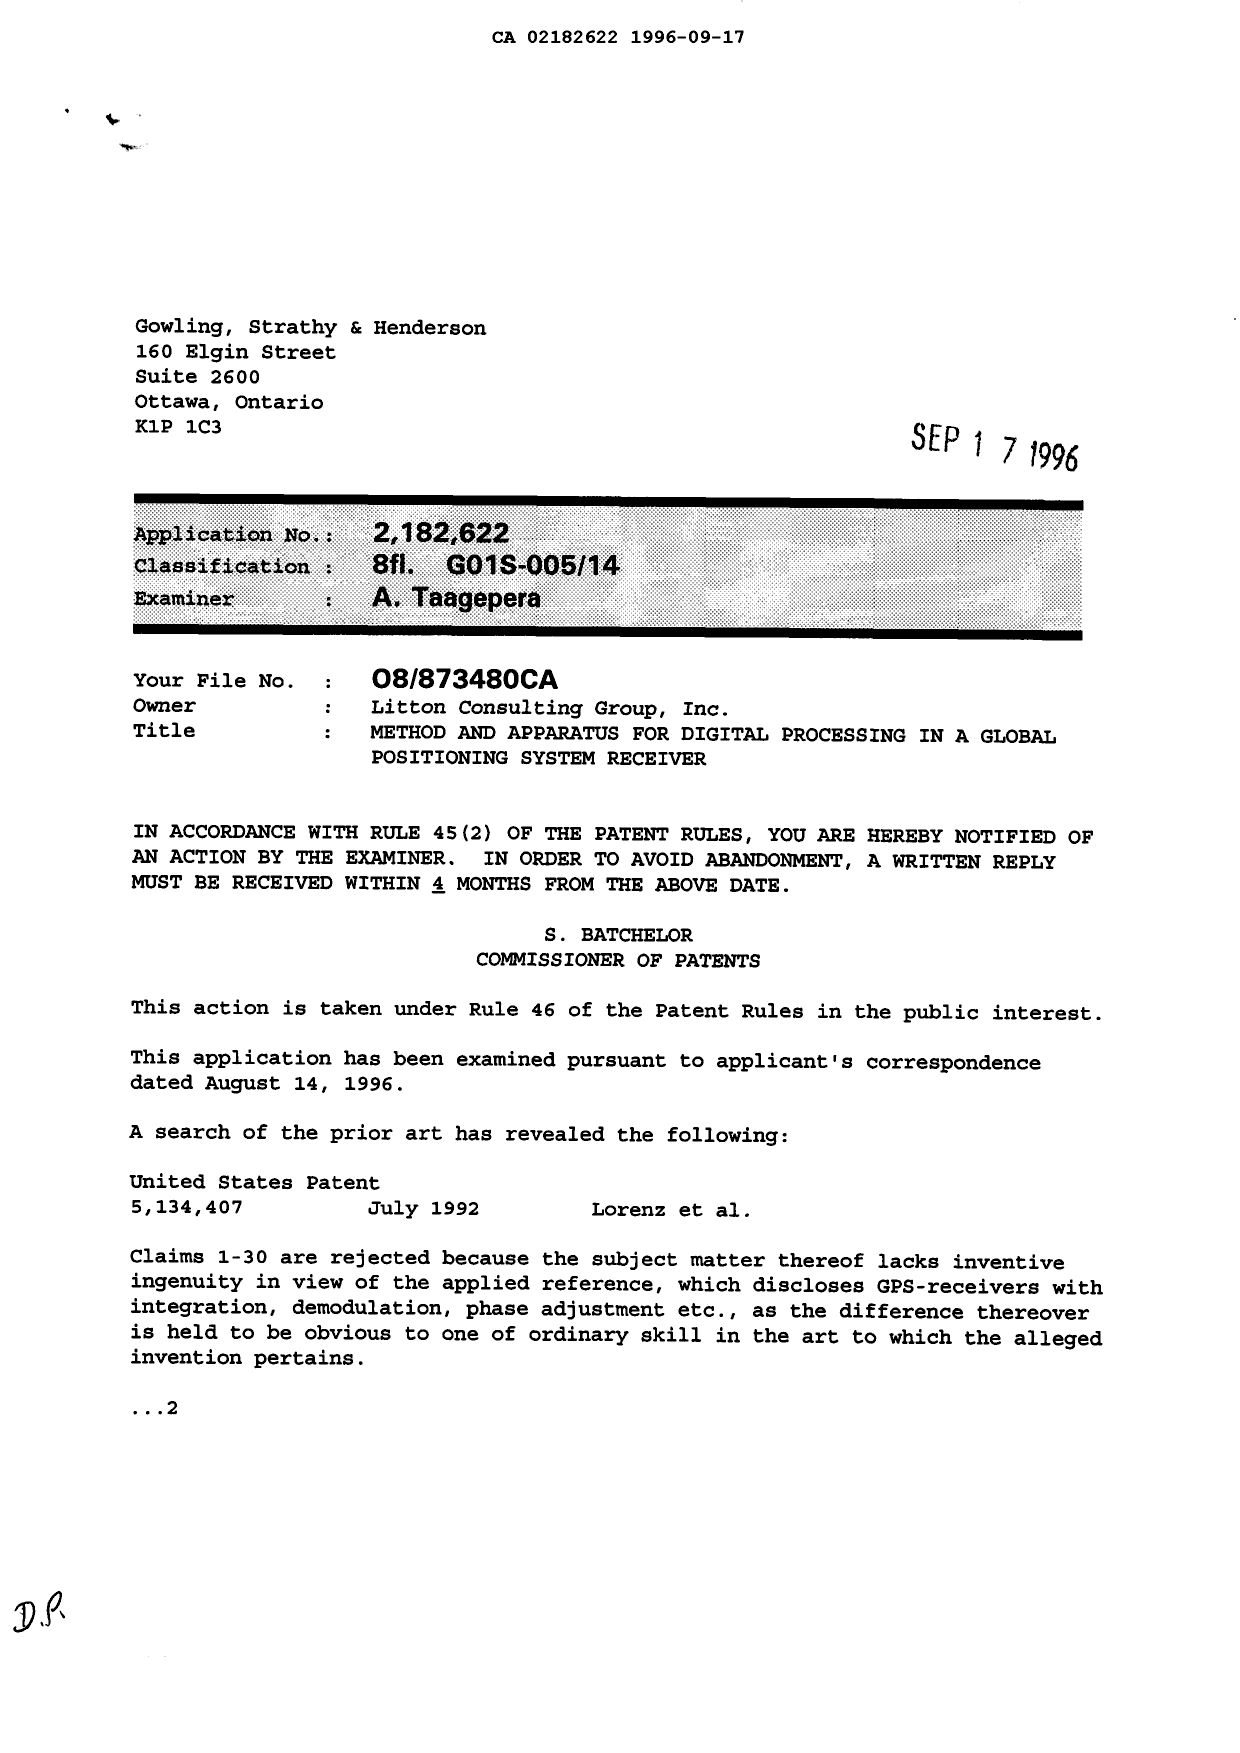 Document de brevet canadien 2182622. Poursuite-Amendment 19960917. Image 1 de 2